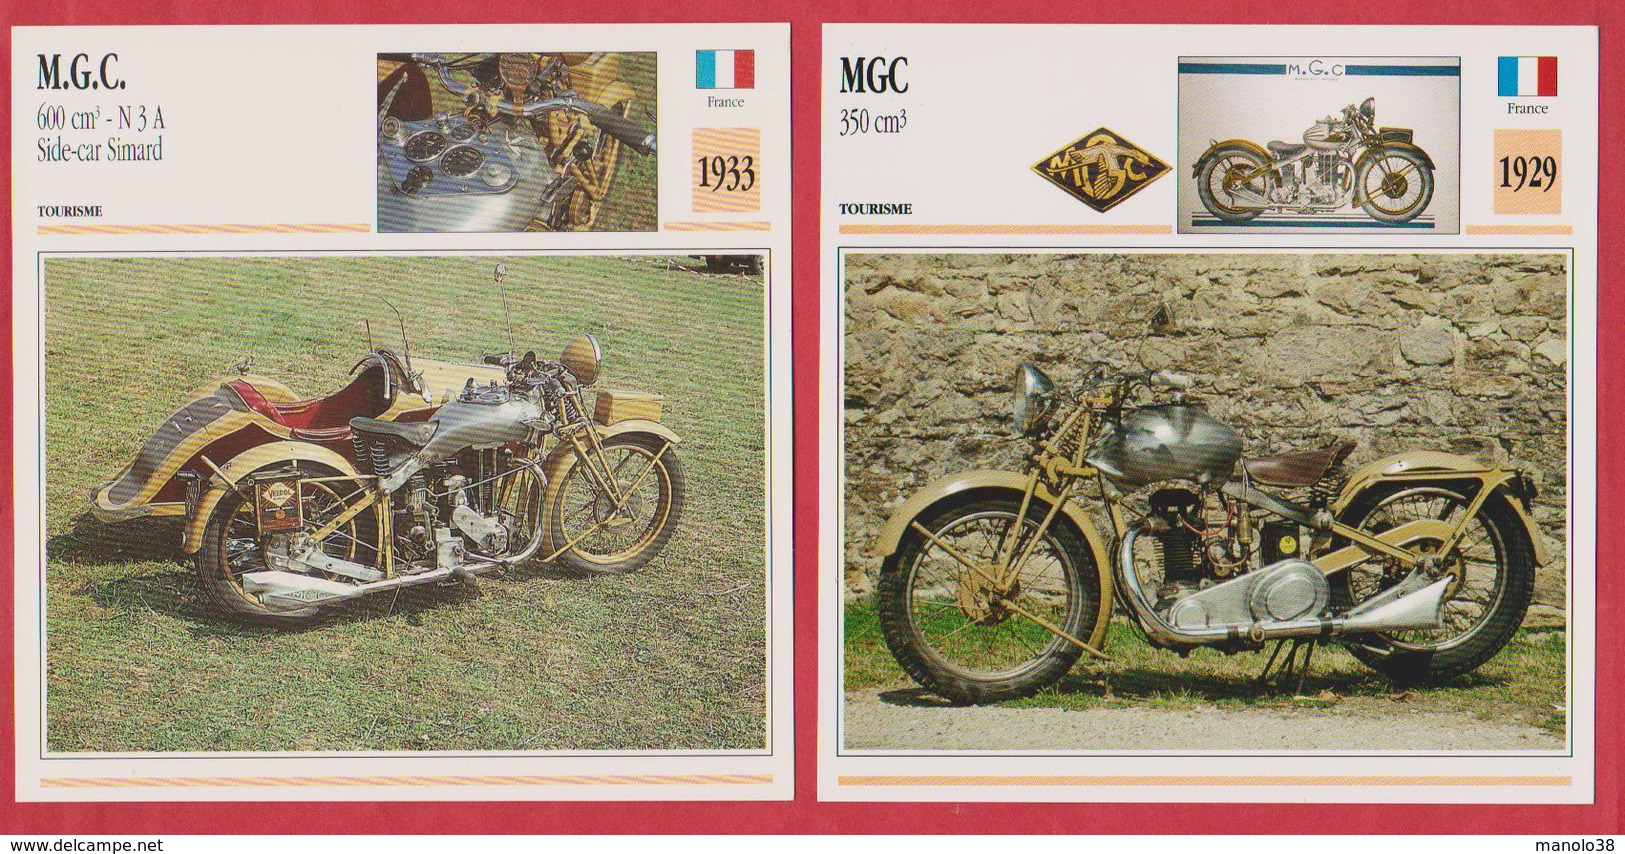 Moto MGC, 2 Fiches Illustrées De Ces Motos Françaises, Une 350 Cm3 De 1929, Une 600 Cm3 N3A Side Car Simard De 1933. - Sports